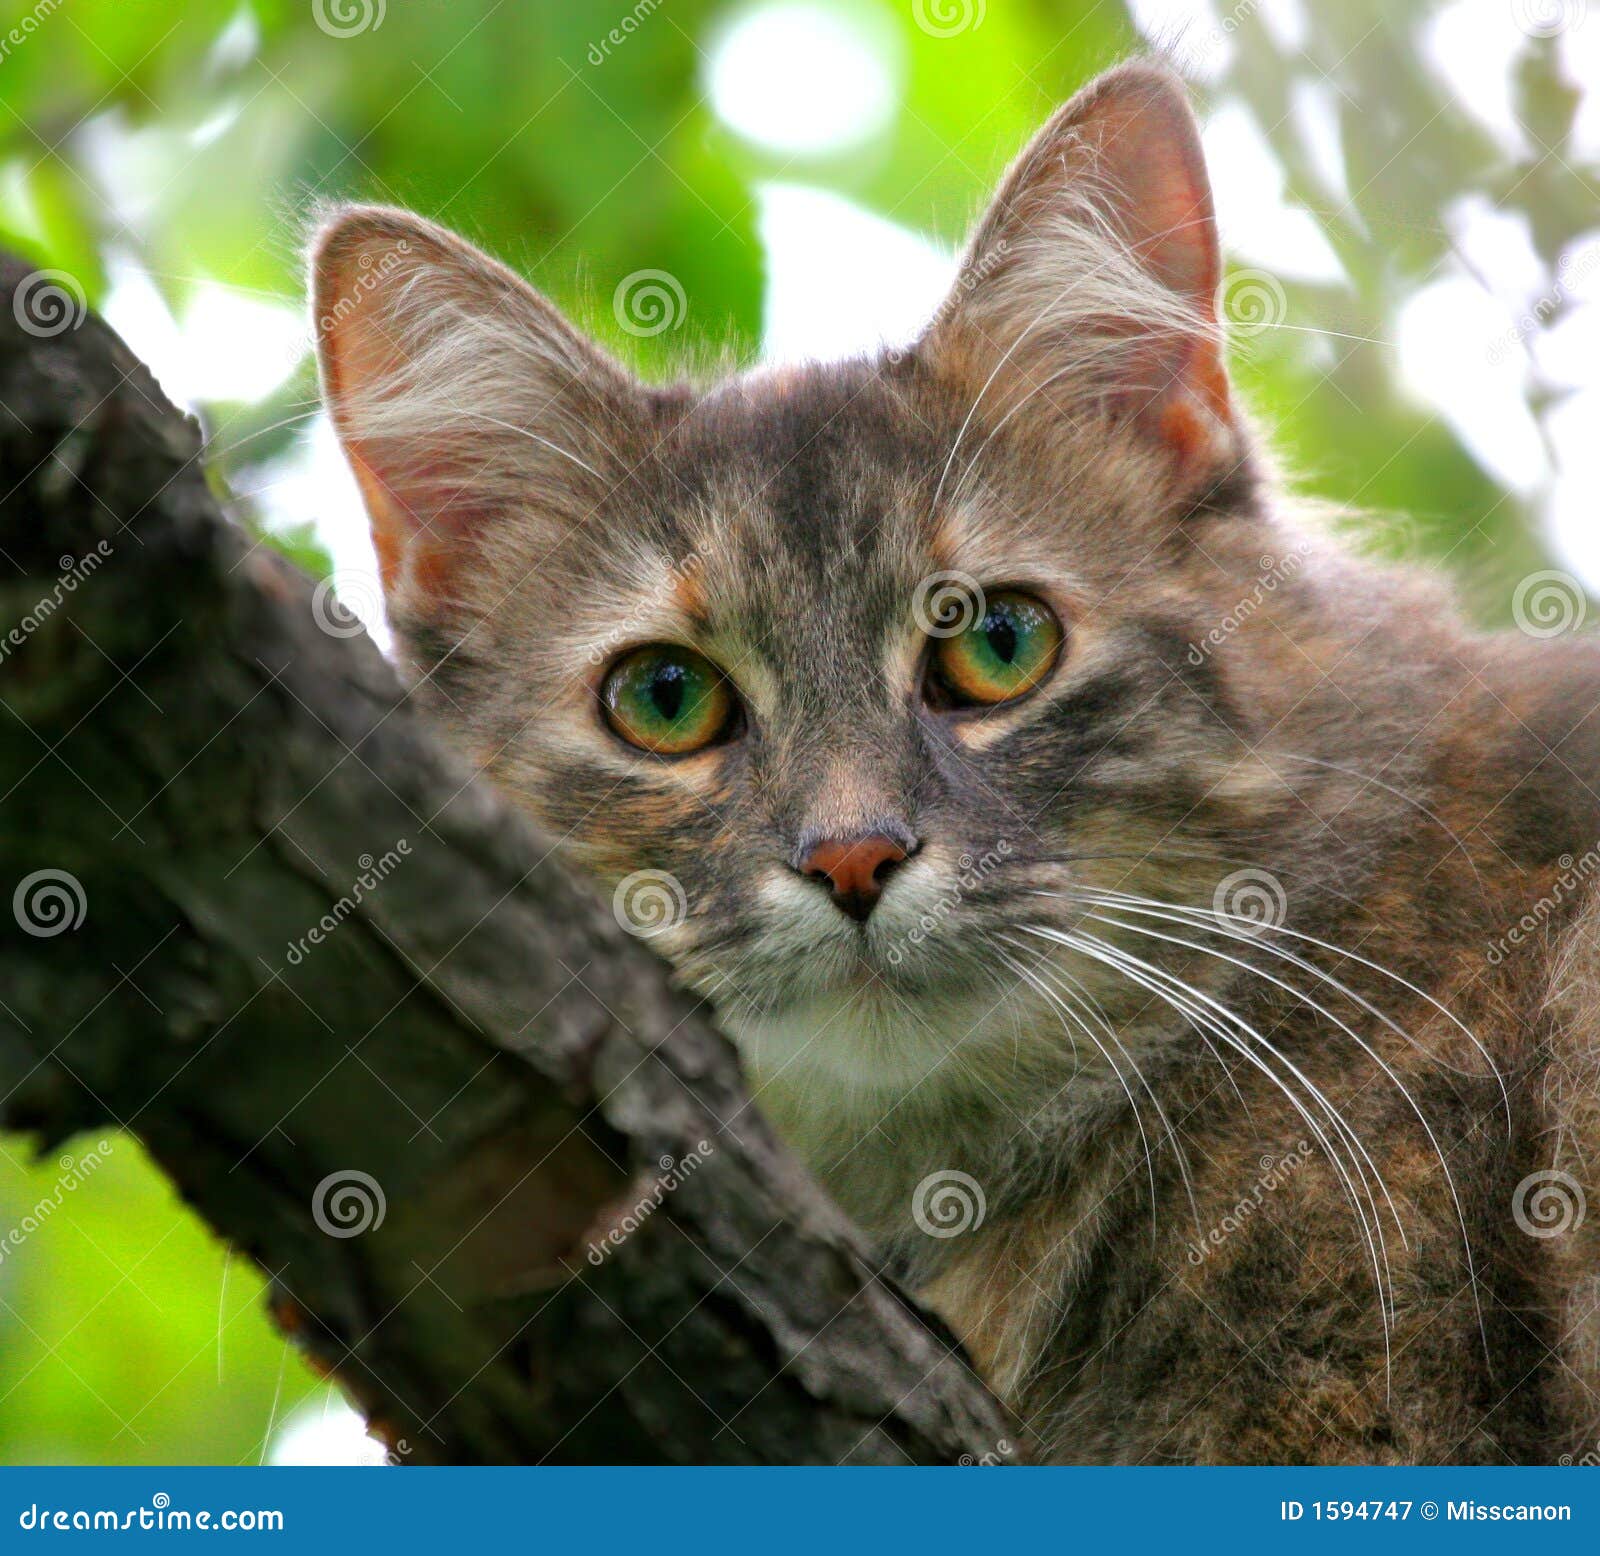 Cat in an apple tree stock image. Image of feline, ears ...